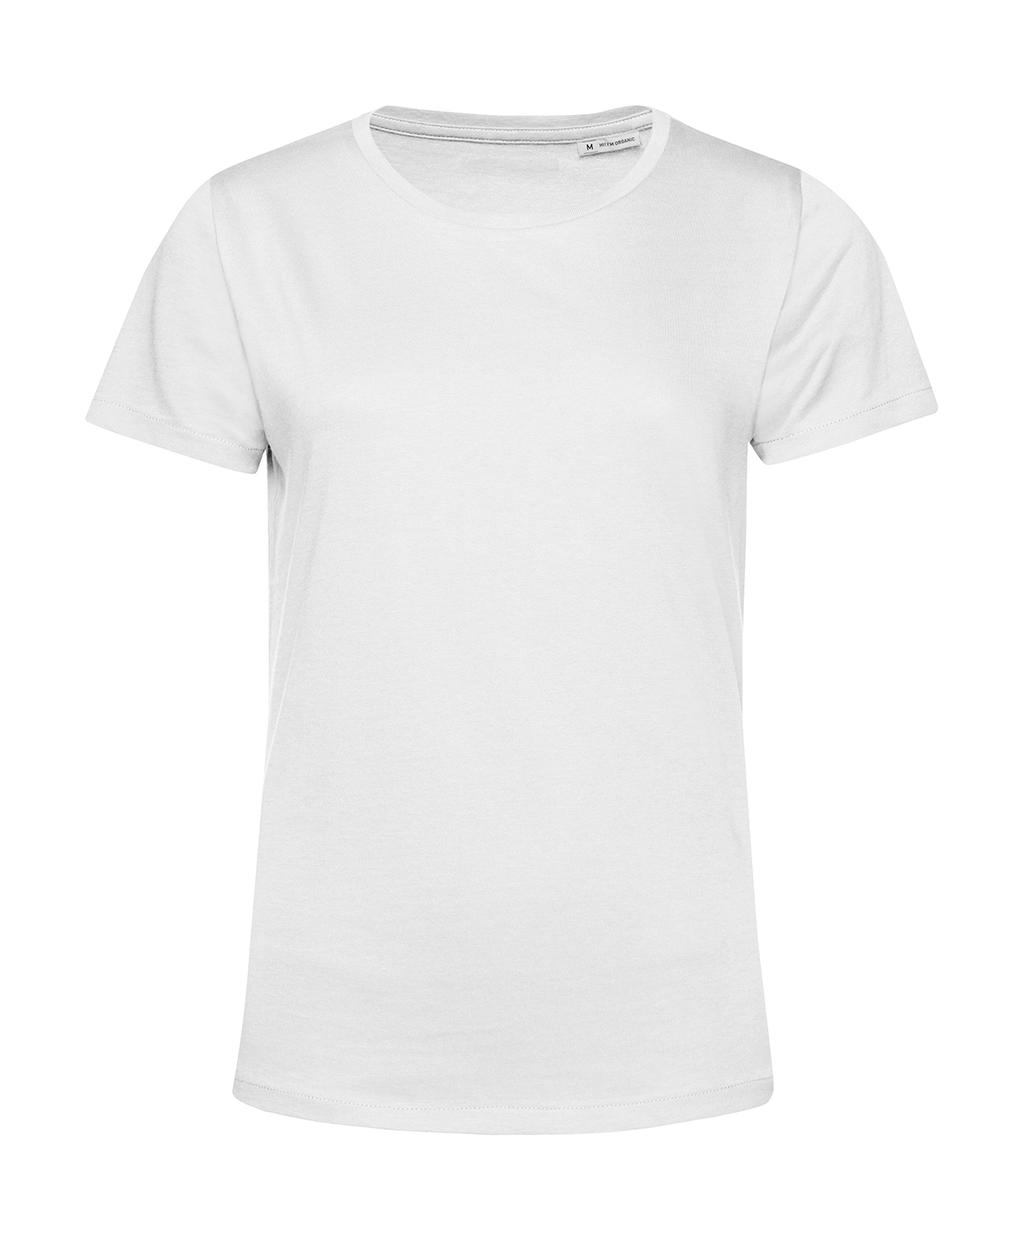 Tričko dámské BC Organic Inspire E150 - bílé, XL